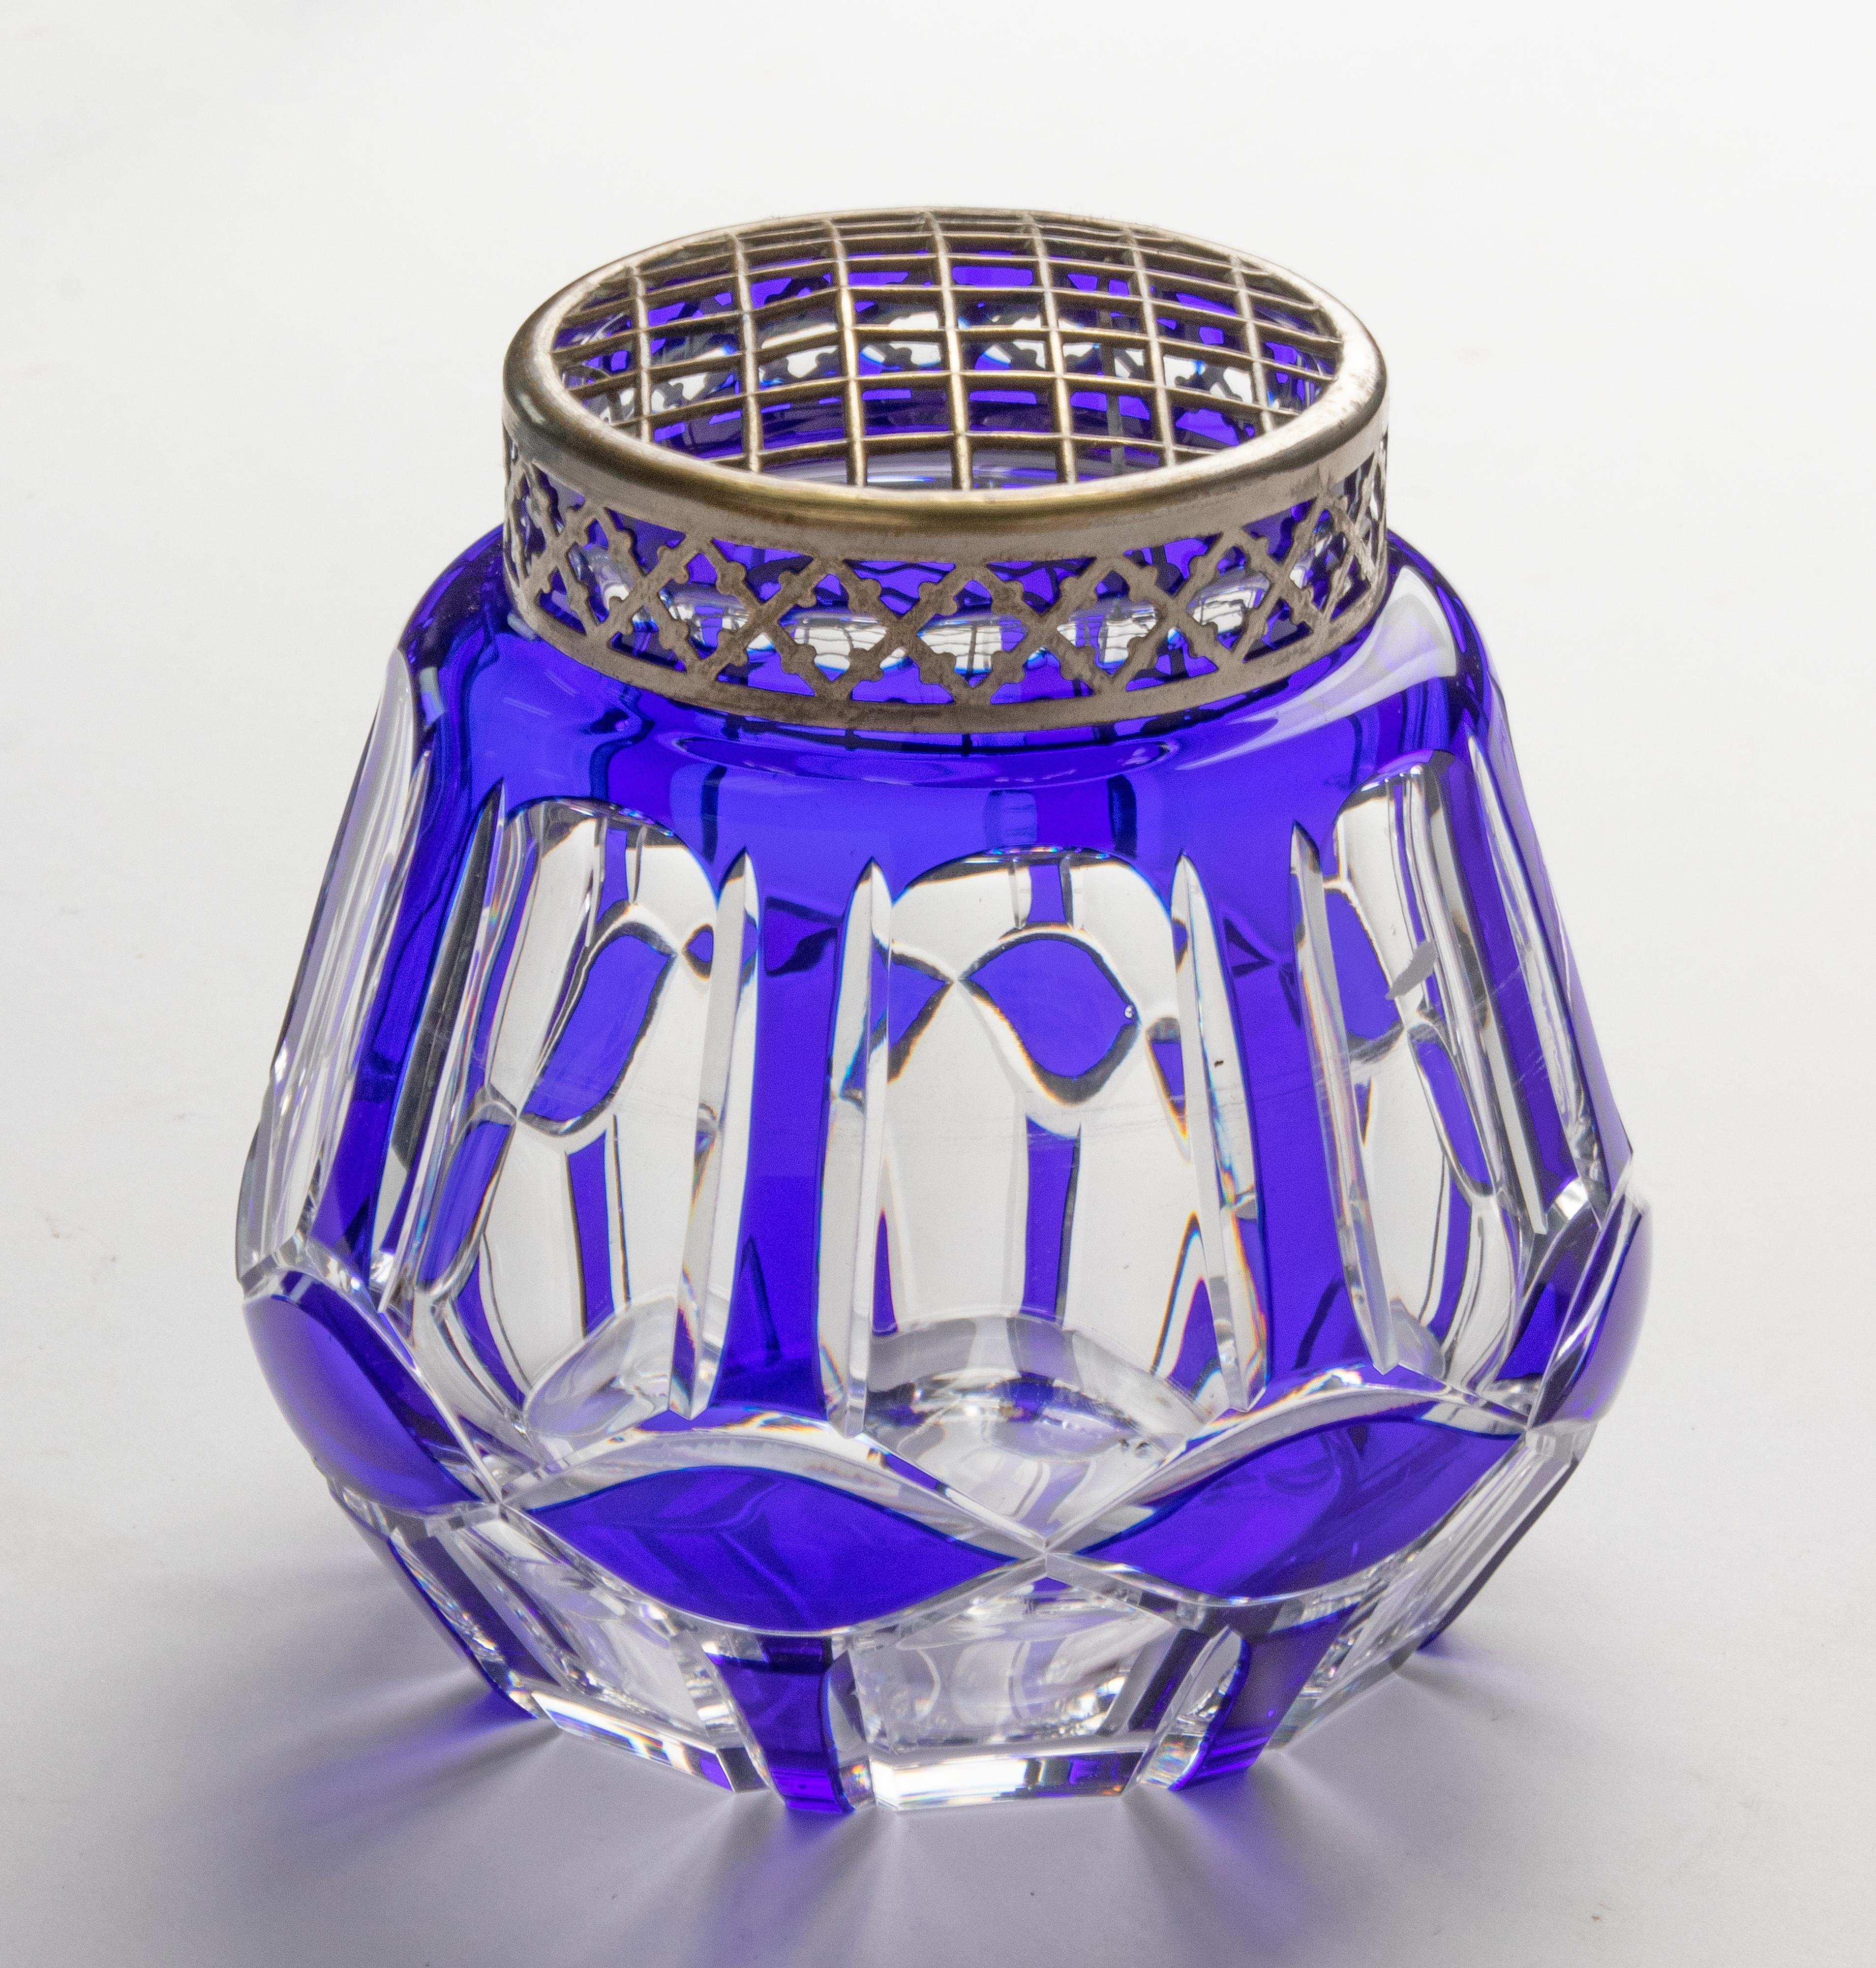 Große Kristallvase Pick Fleur von der belgischen Marke Val Saint Lambert. Die Vase hat eine tiefblaue Farbe und auf der Oberseite ein Metallgitter, um Stiele in einem Arrangement zu halten. Der Körper enthält eine gute Menge an Wasser, um das